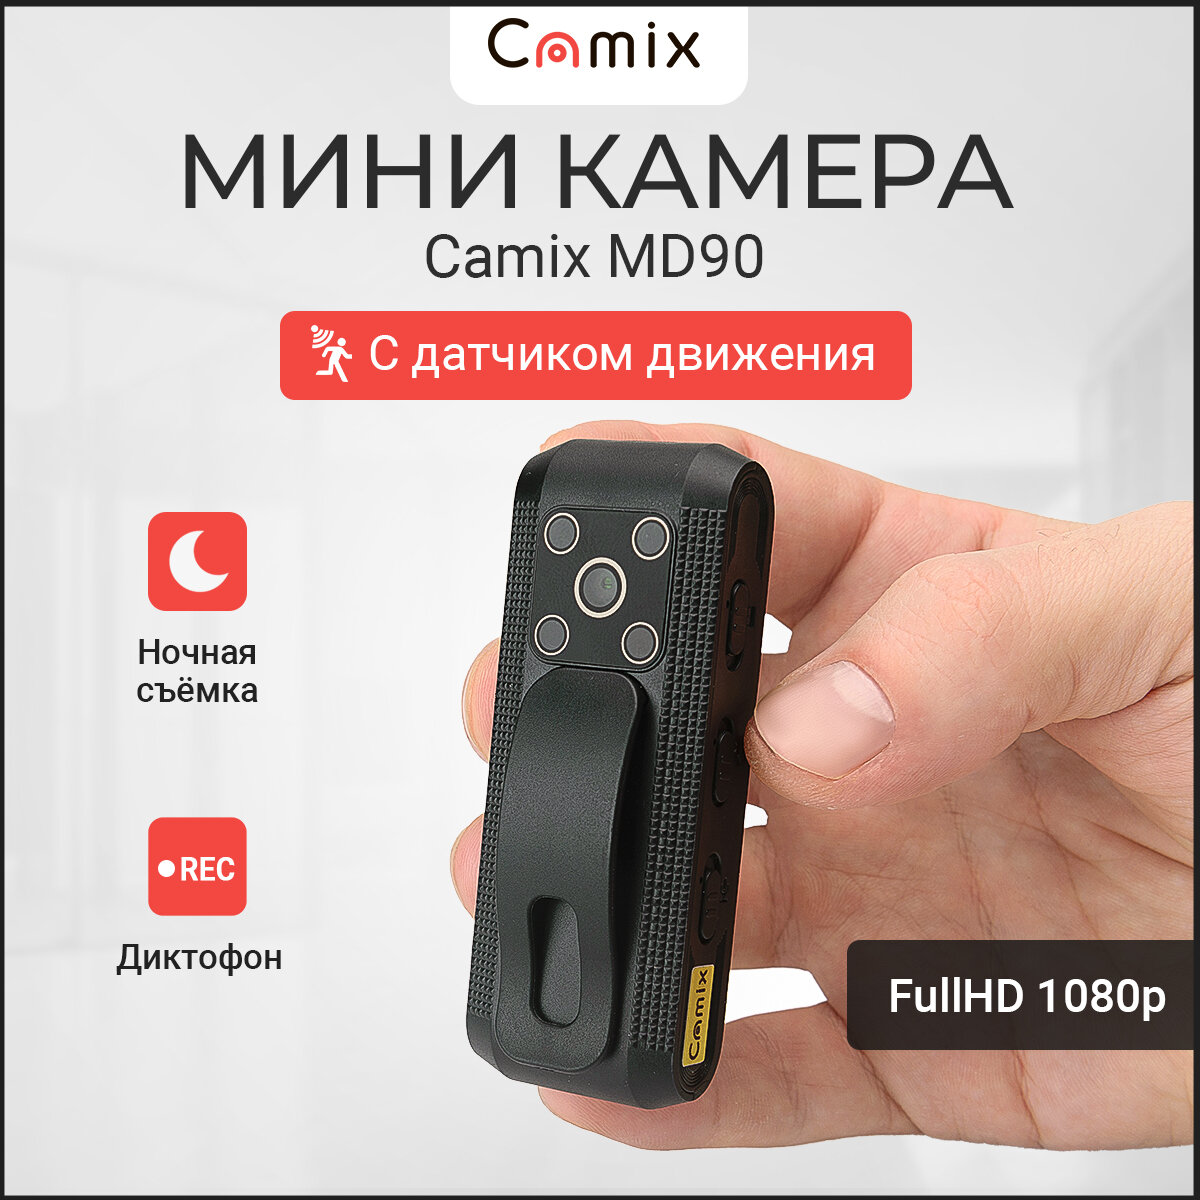 Мини камера Camix MD90 с датчиком движения и ночной съёмкой маленькая микро видеокамера для записи видео